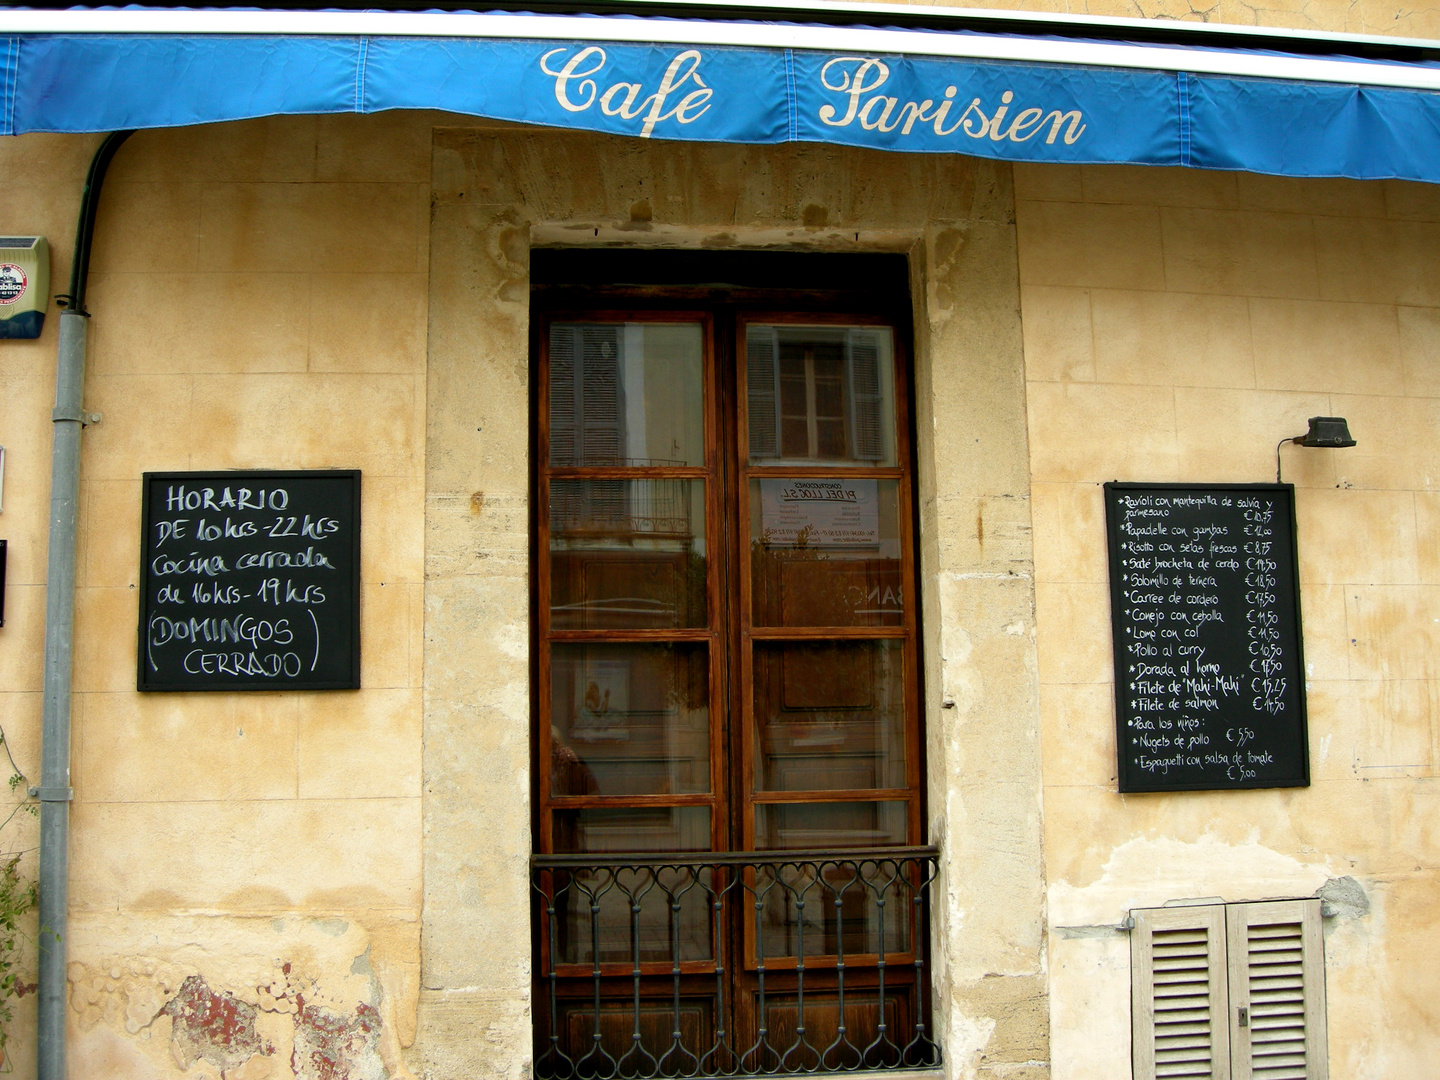 Café Parisien